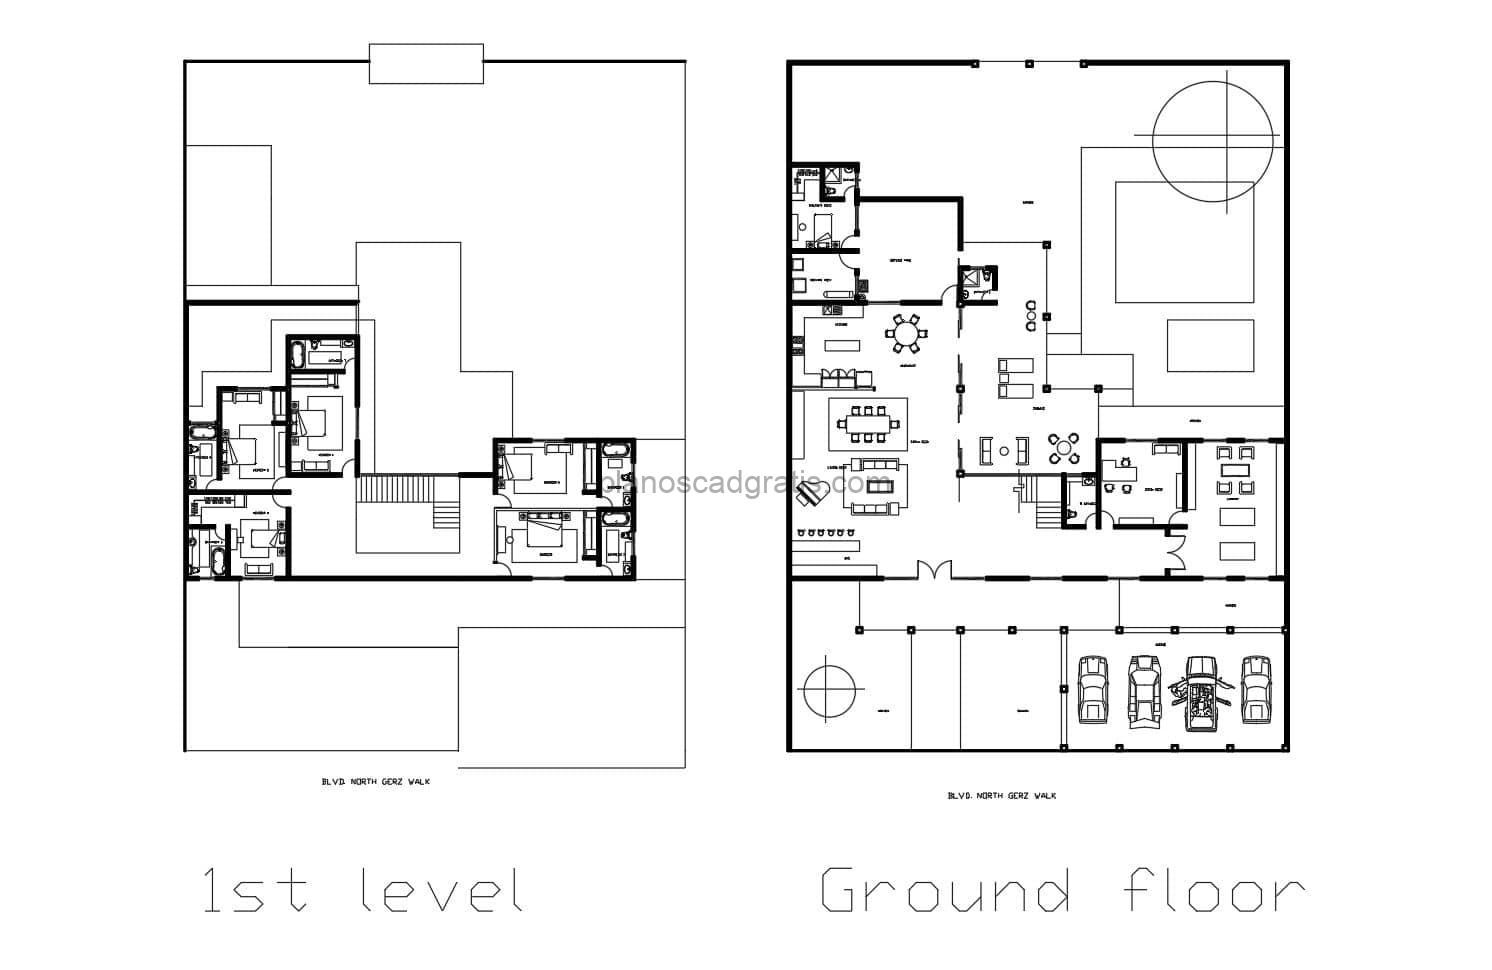 dibujo 2d de planos completos de residencia de dos plantas con cinco habitaciones en total y area de piscina, planos arquitectonicos con dimensiones para descarga gratis en formato dwg de autocad